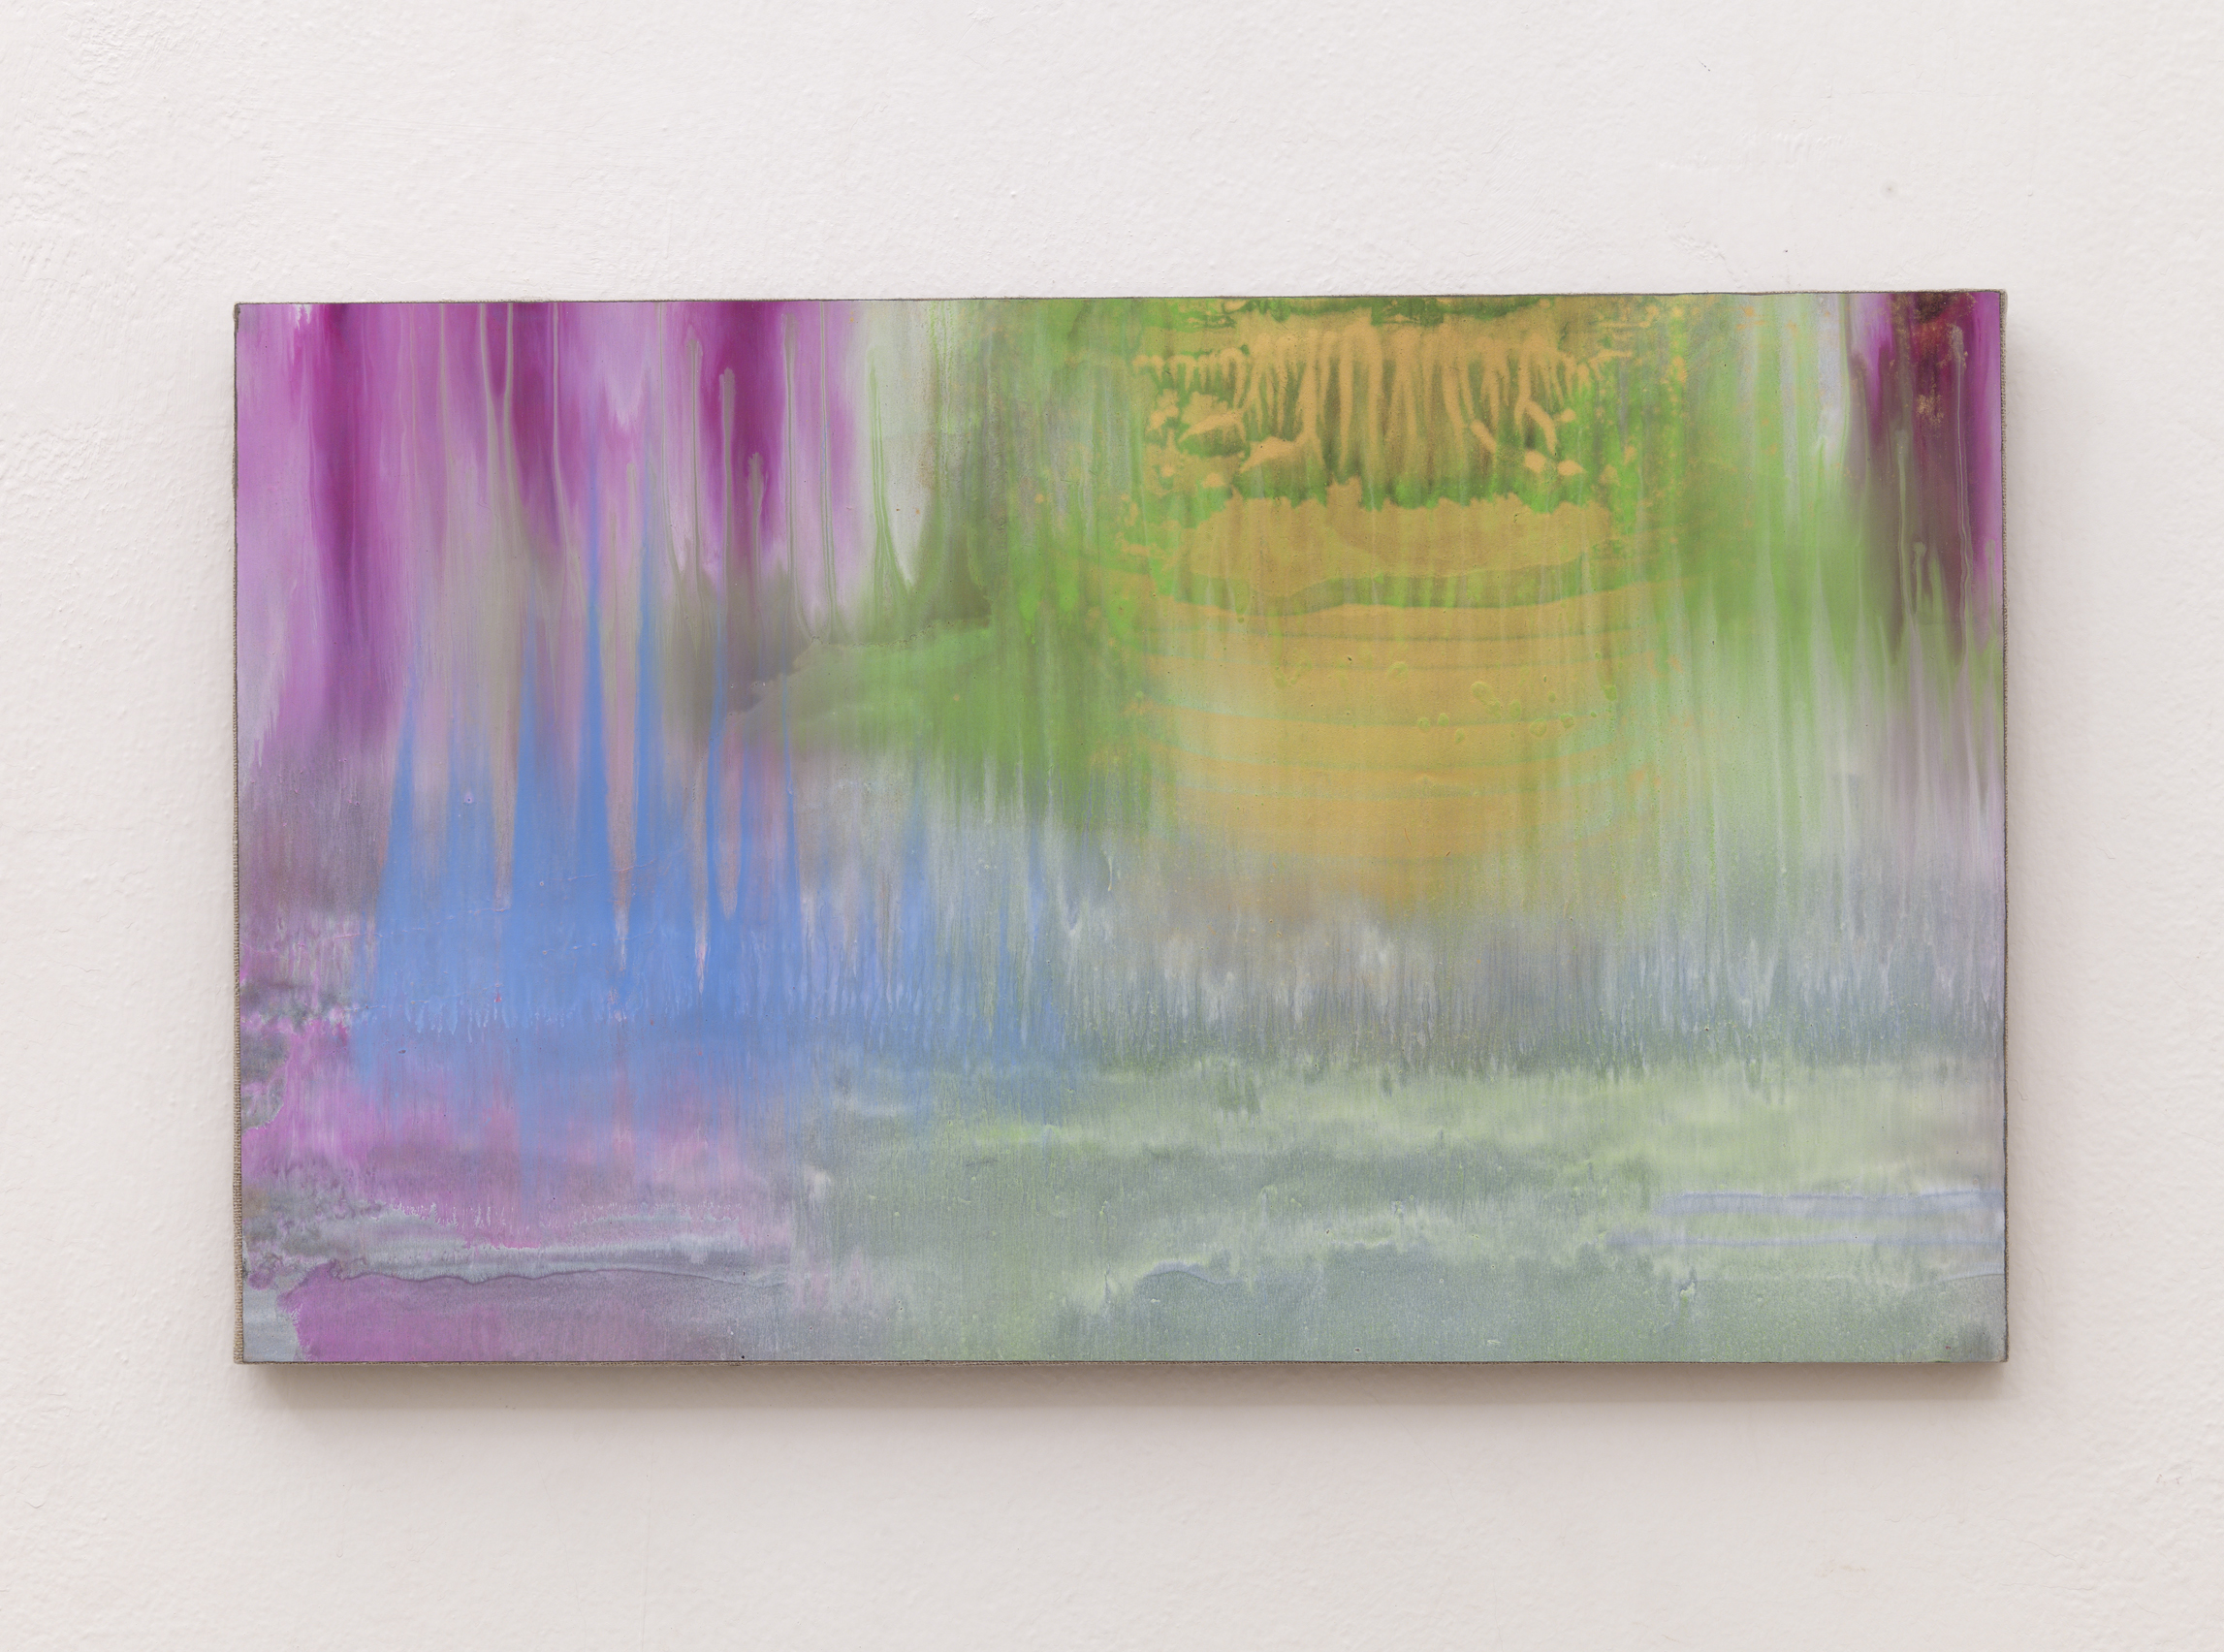 Matteo Montani, Sotto una nuova luce, 2014, olio e polvere d’ottone su carta abrasiva intelata, cm 36x60